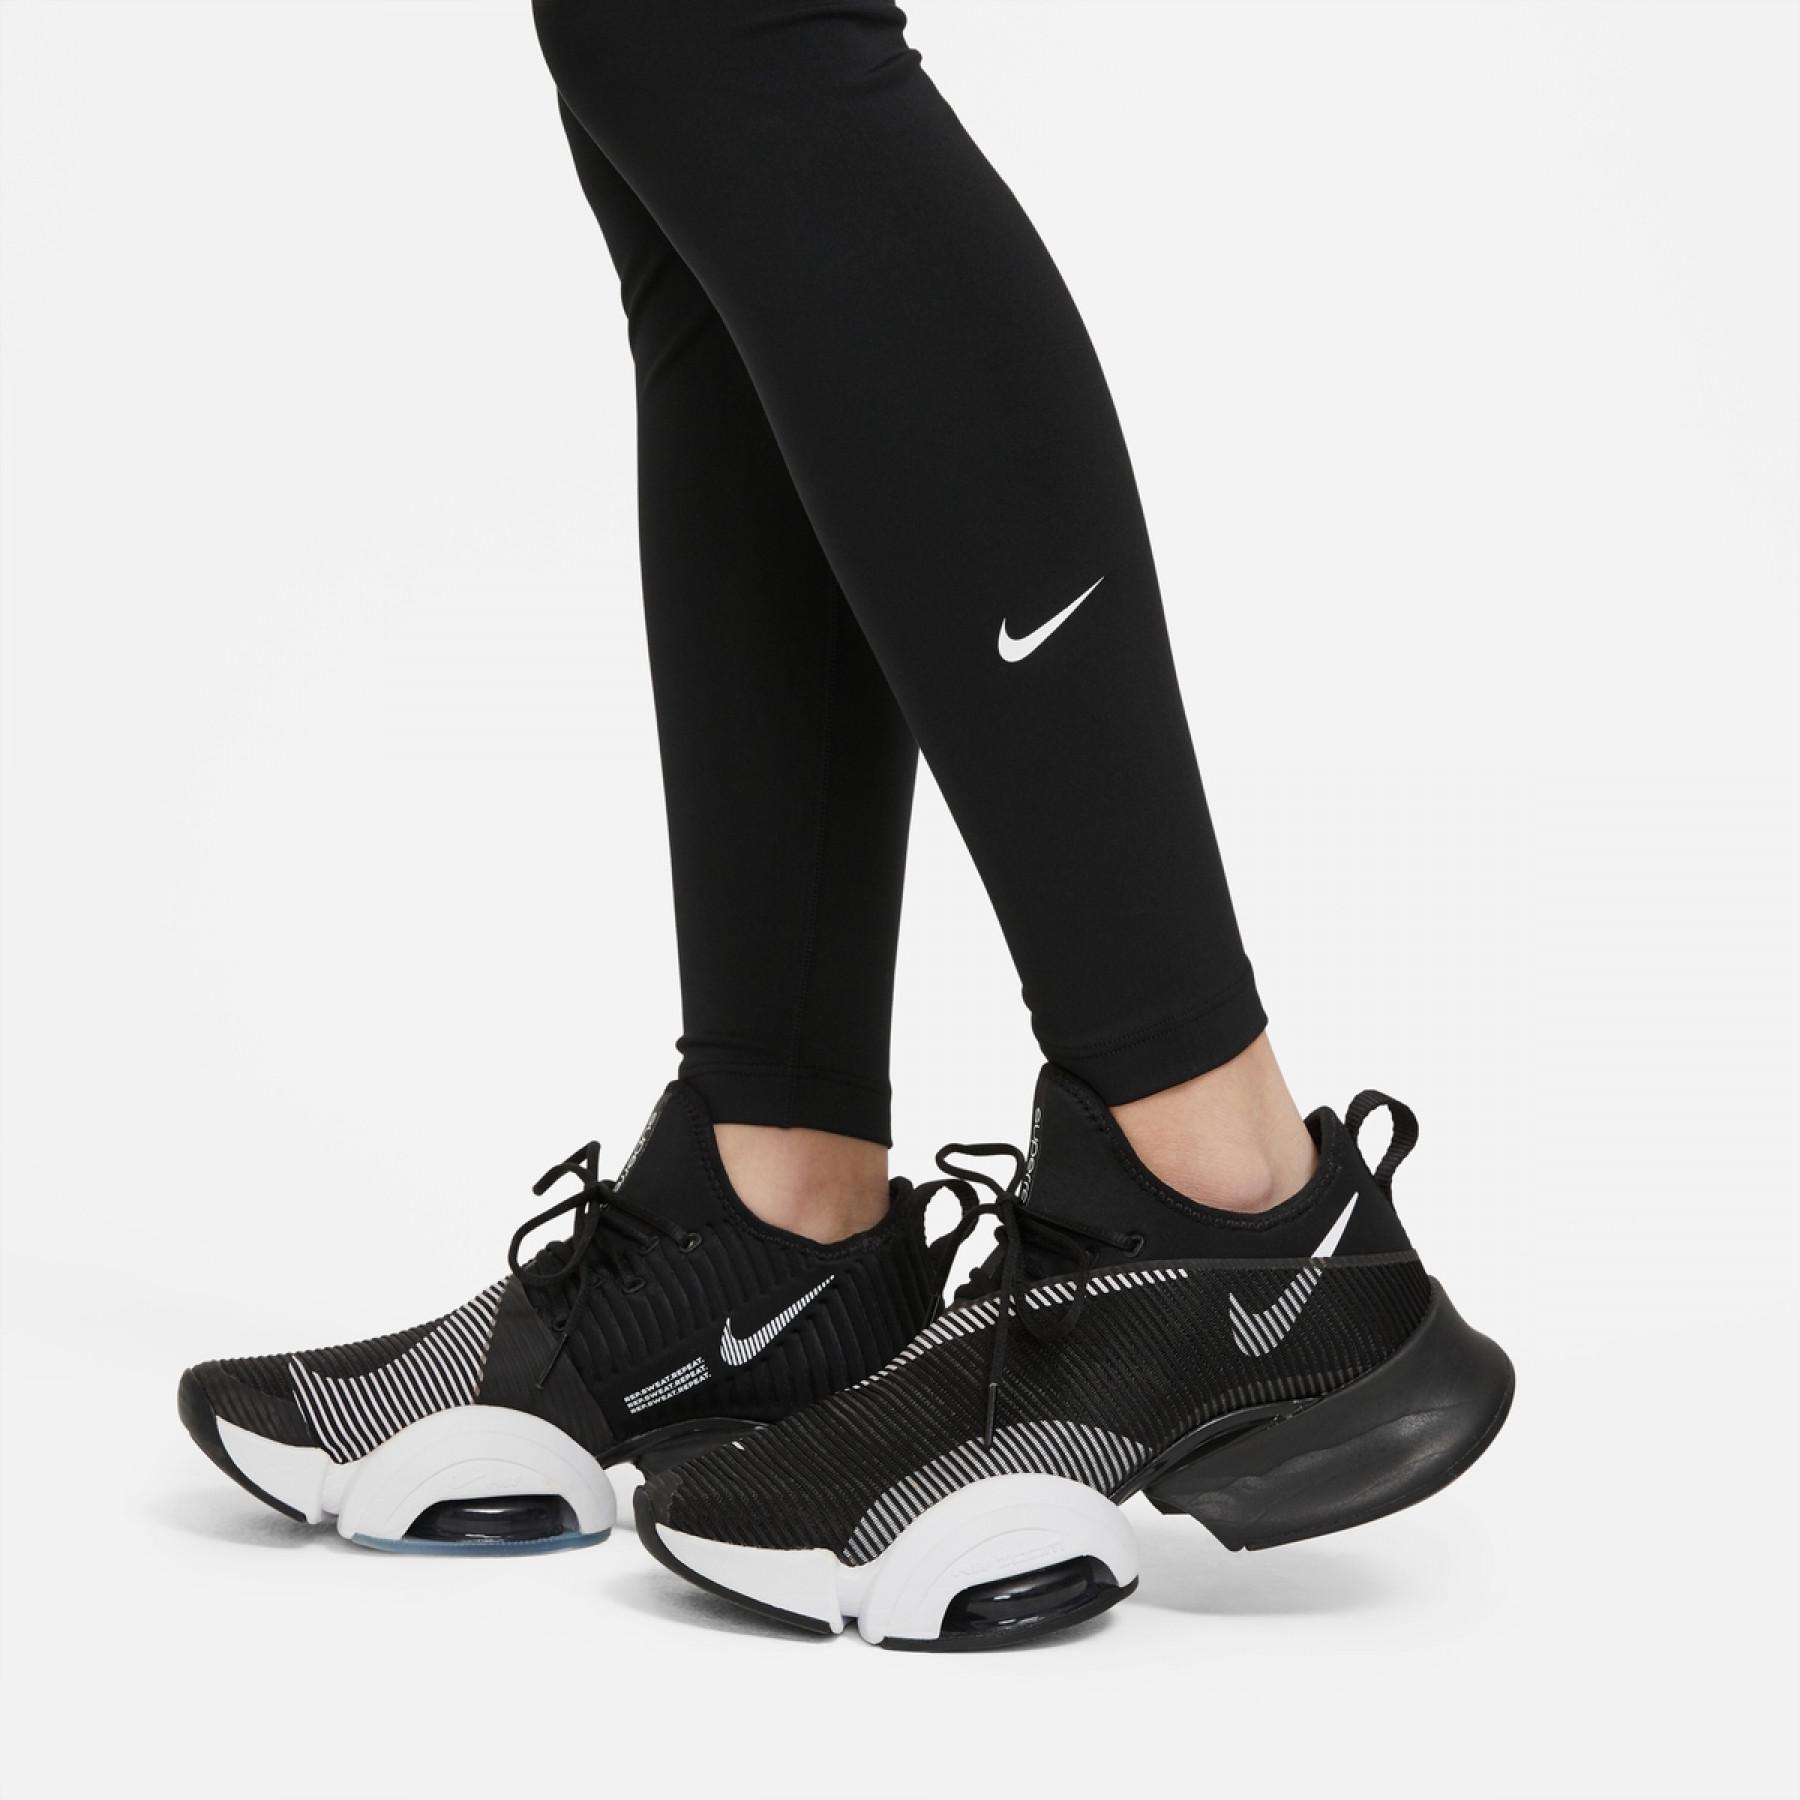 Damen-Leggings Nike One Dri-FIT